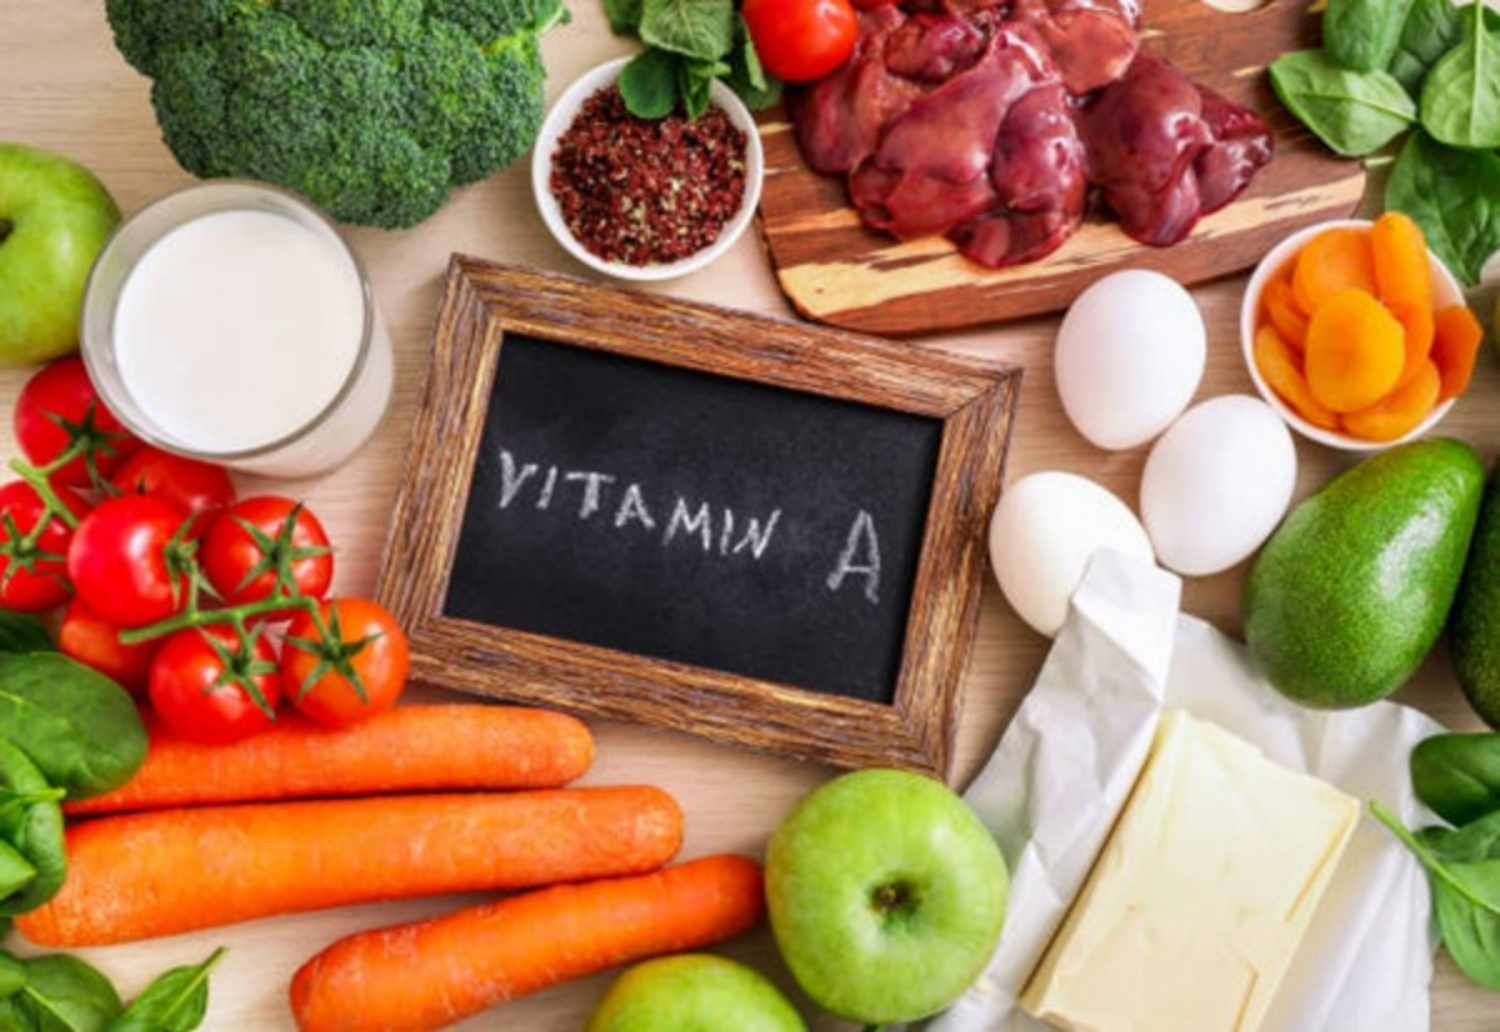 6 lợi ích đã được khoa học chứng minh của vitamin A đối với sức khỏe